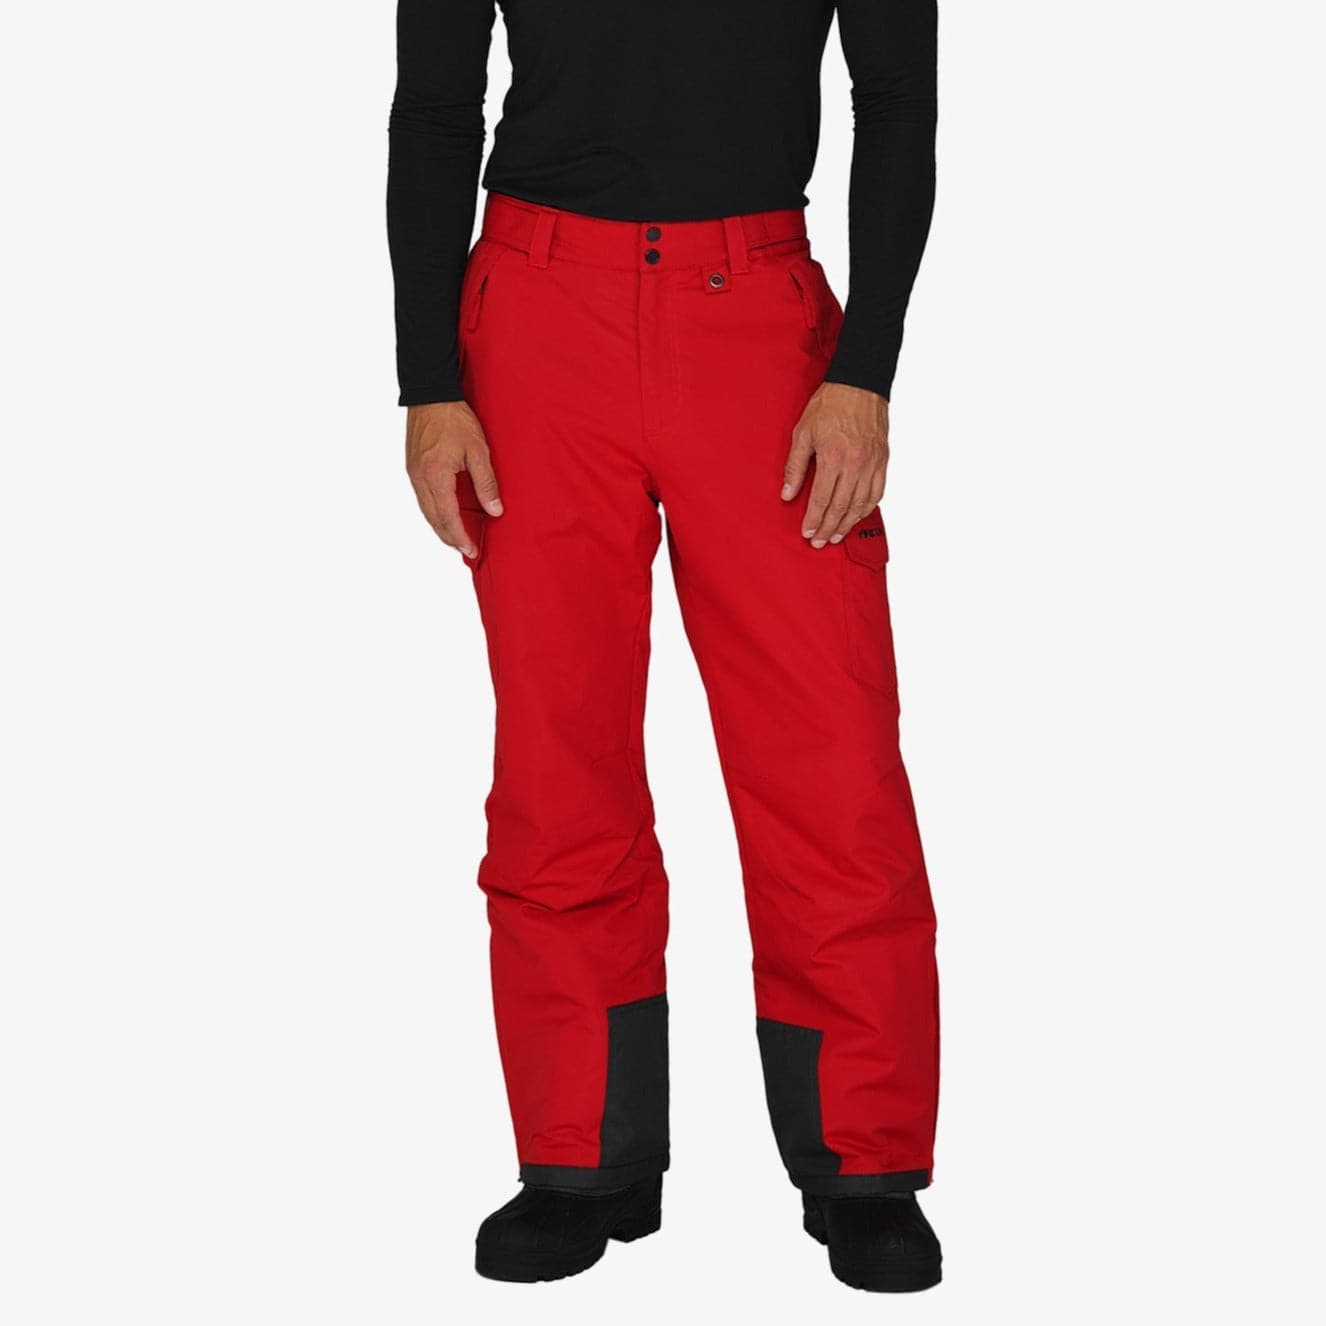 GetUSCart- Arctix Men's Snow Sports Cargo Pants, Green GEO, 2X-Large/Regular